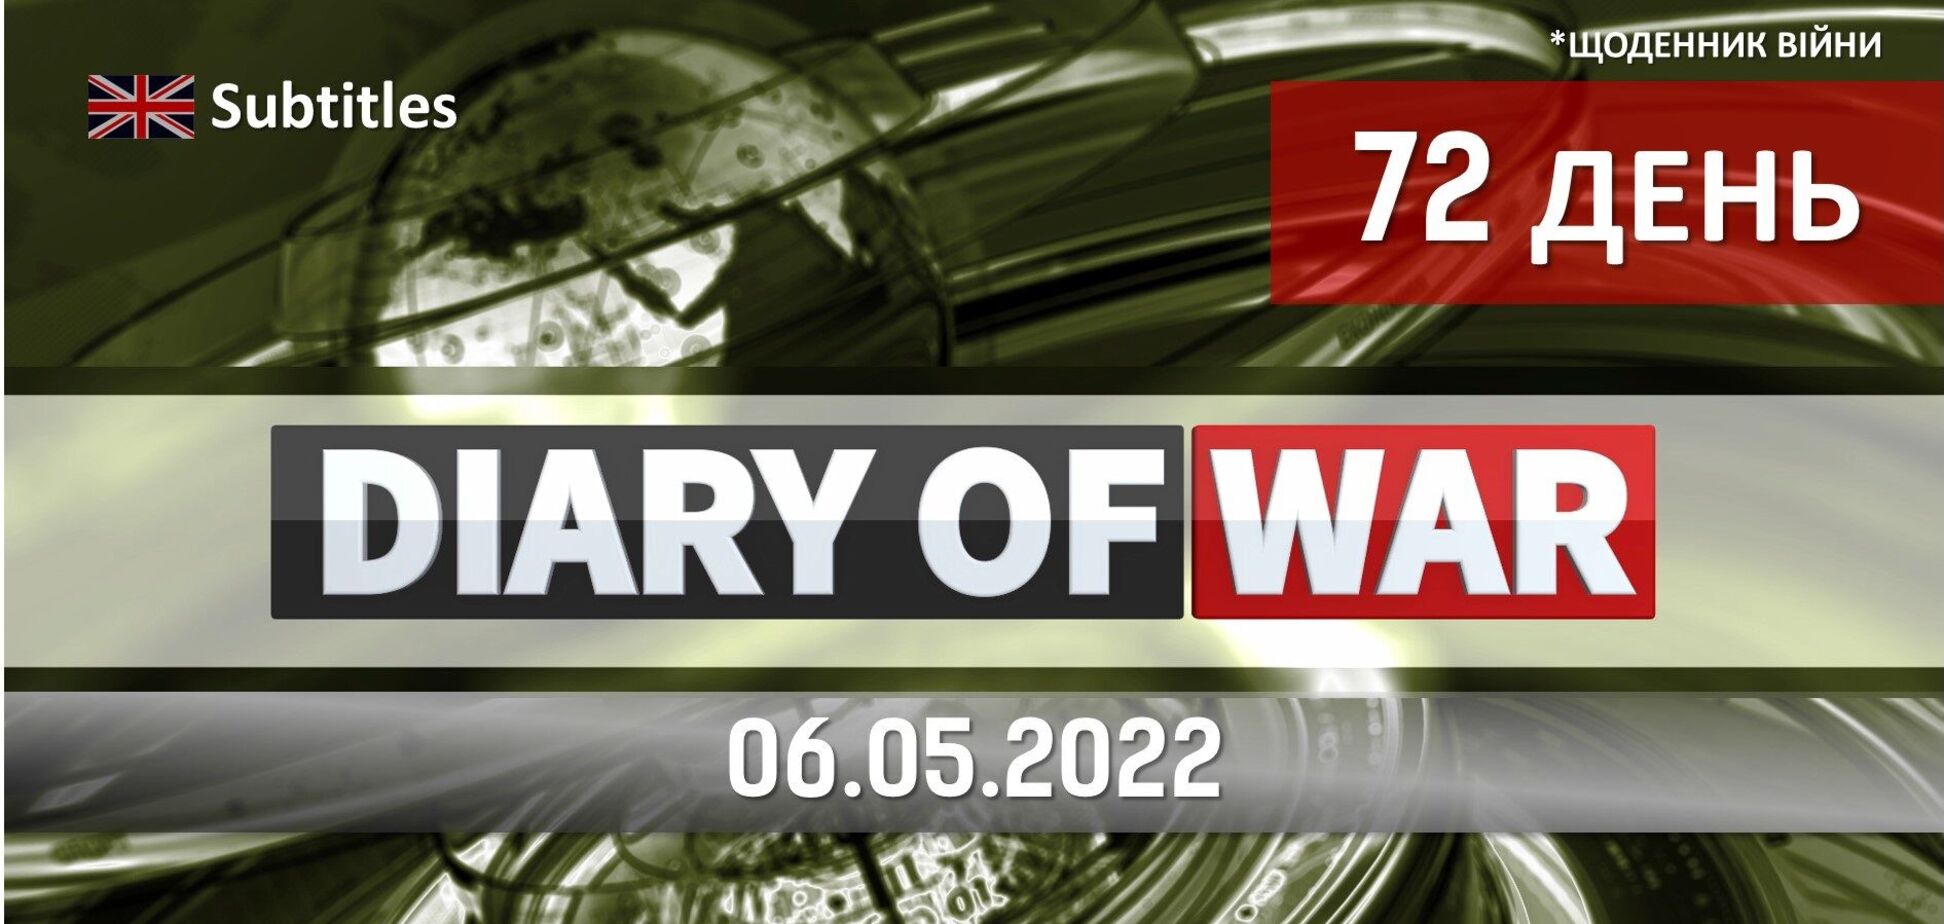 Горит Адмирал Макаров, 9 мая – начало войны, обмен пленными, – темы краткого обзора событий пятницы от редакции новостей Obozrevatel TV